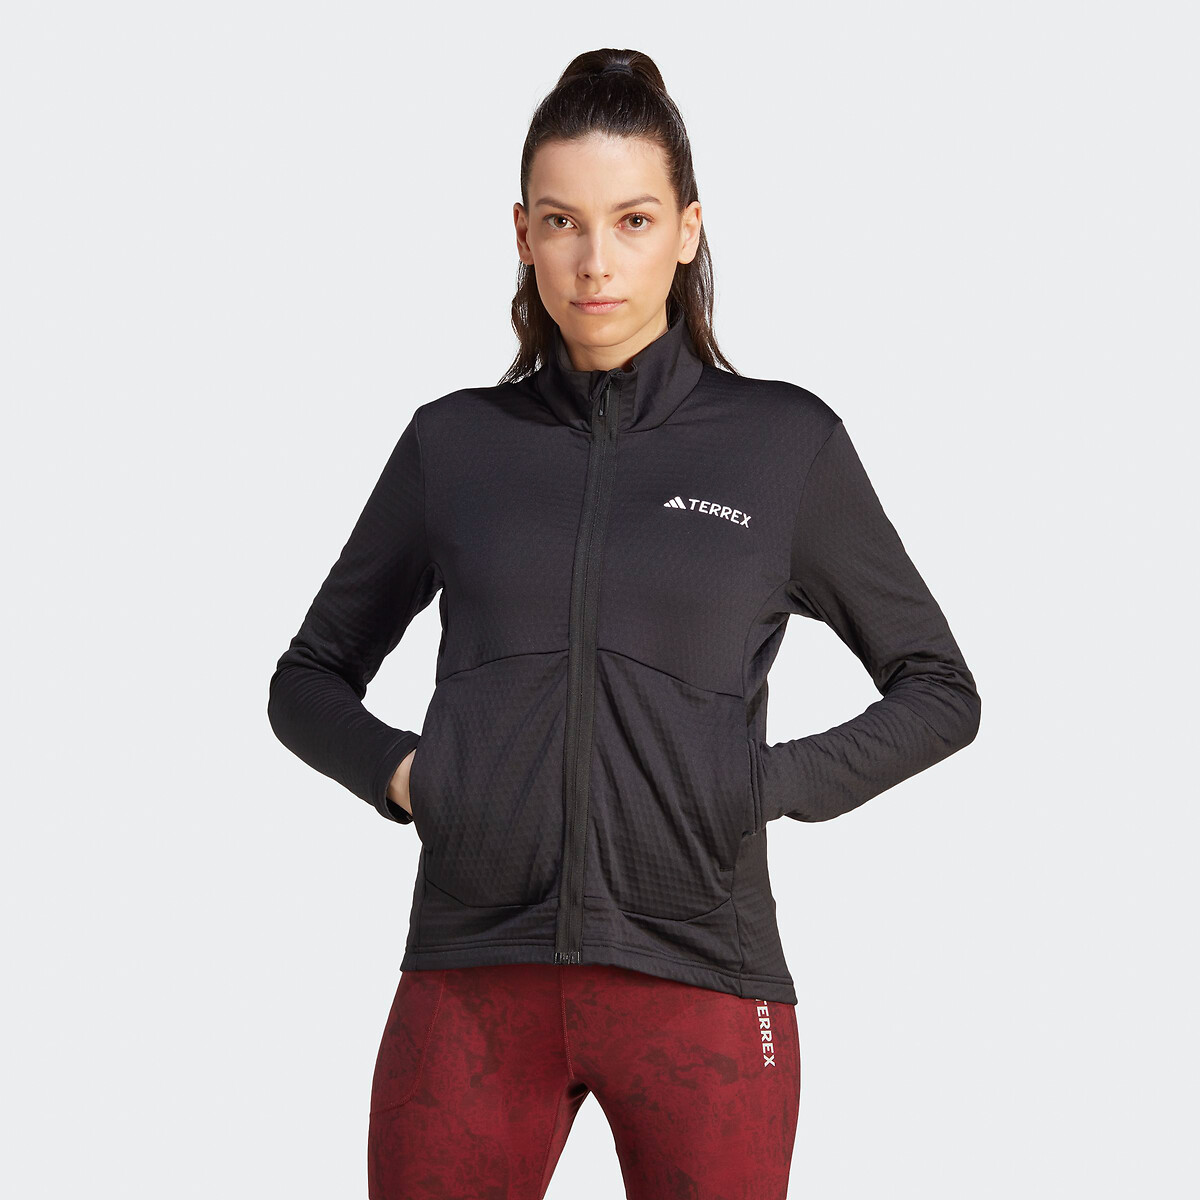 Licht vest met rits voor hiking Terrex Multi in de sale-Adidas Performance 1